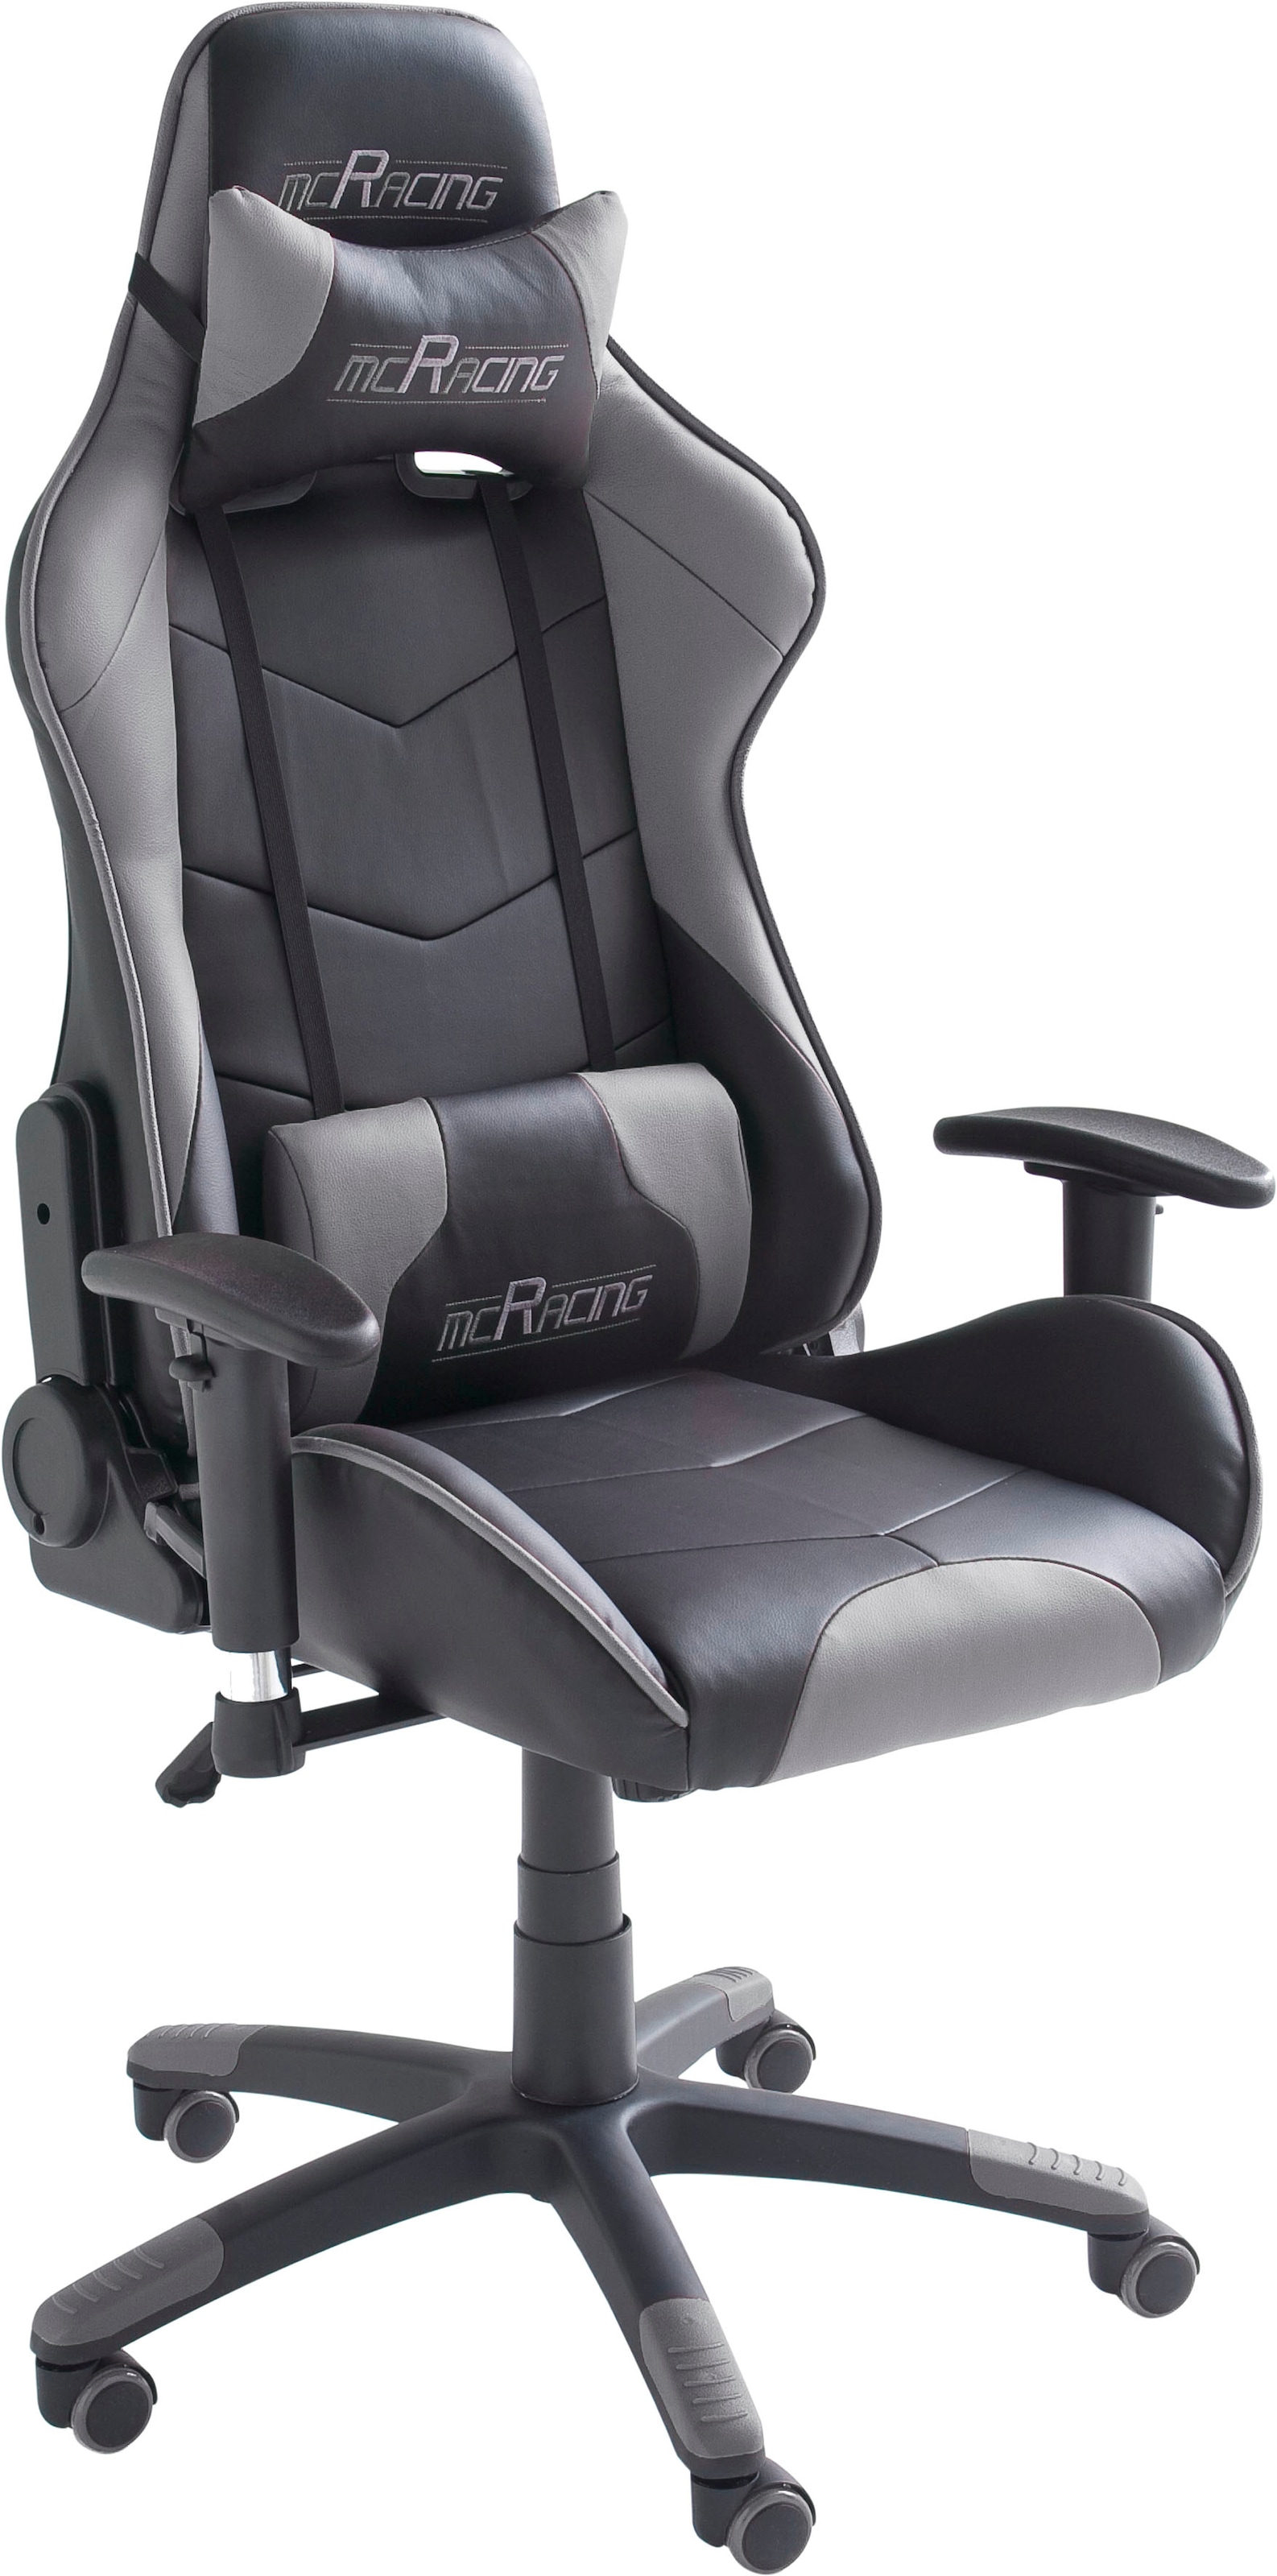 mca furniture gaming chair "mc racing gamingstuhl"